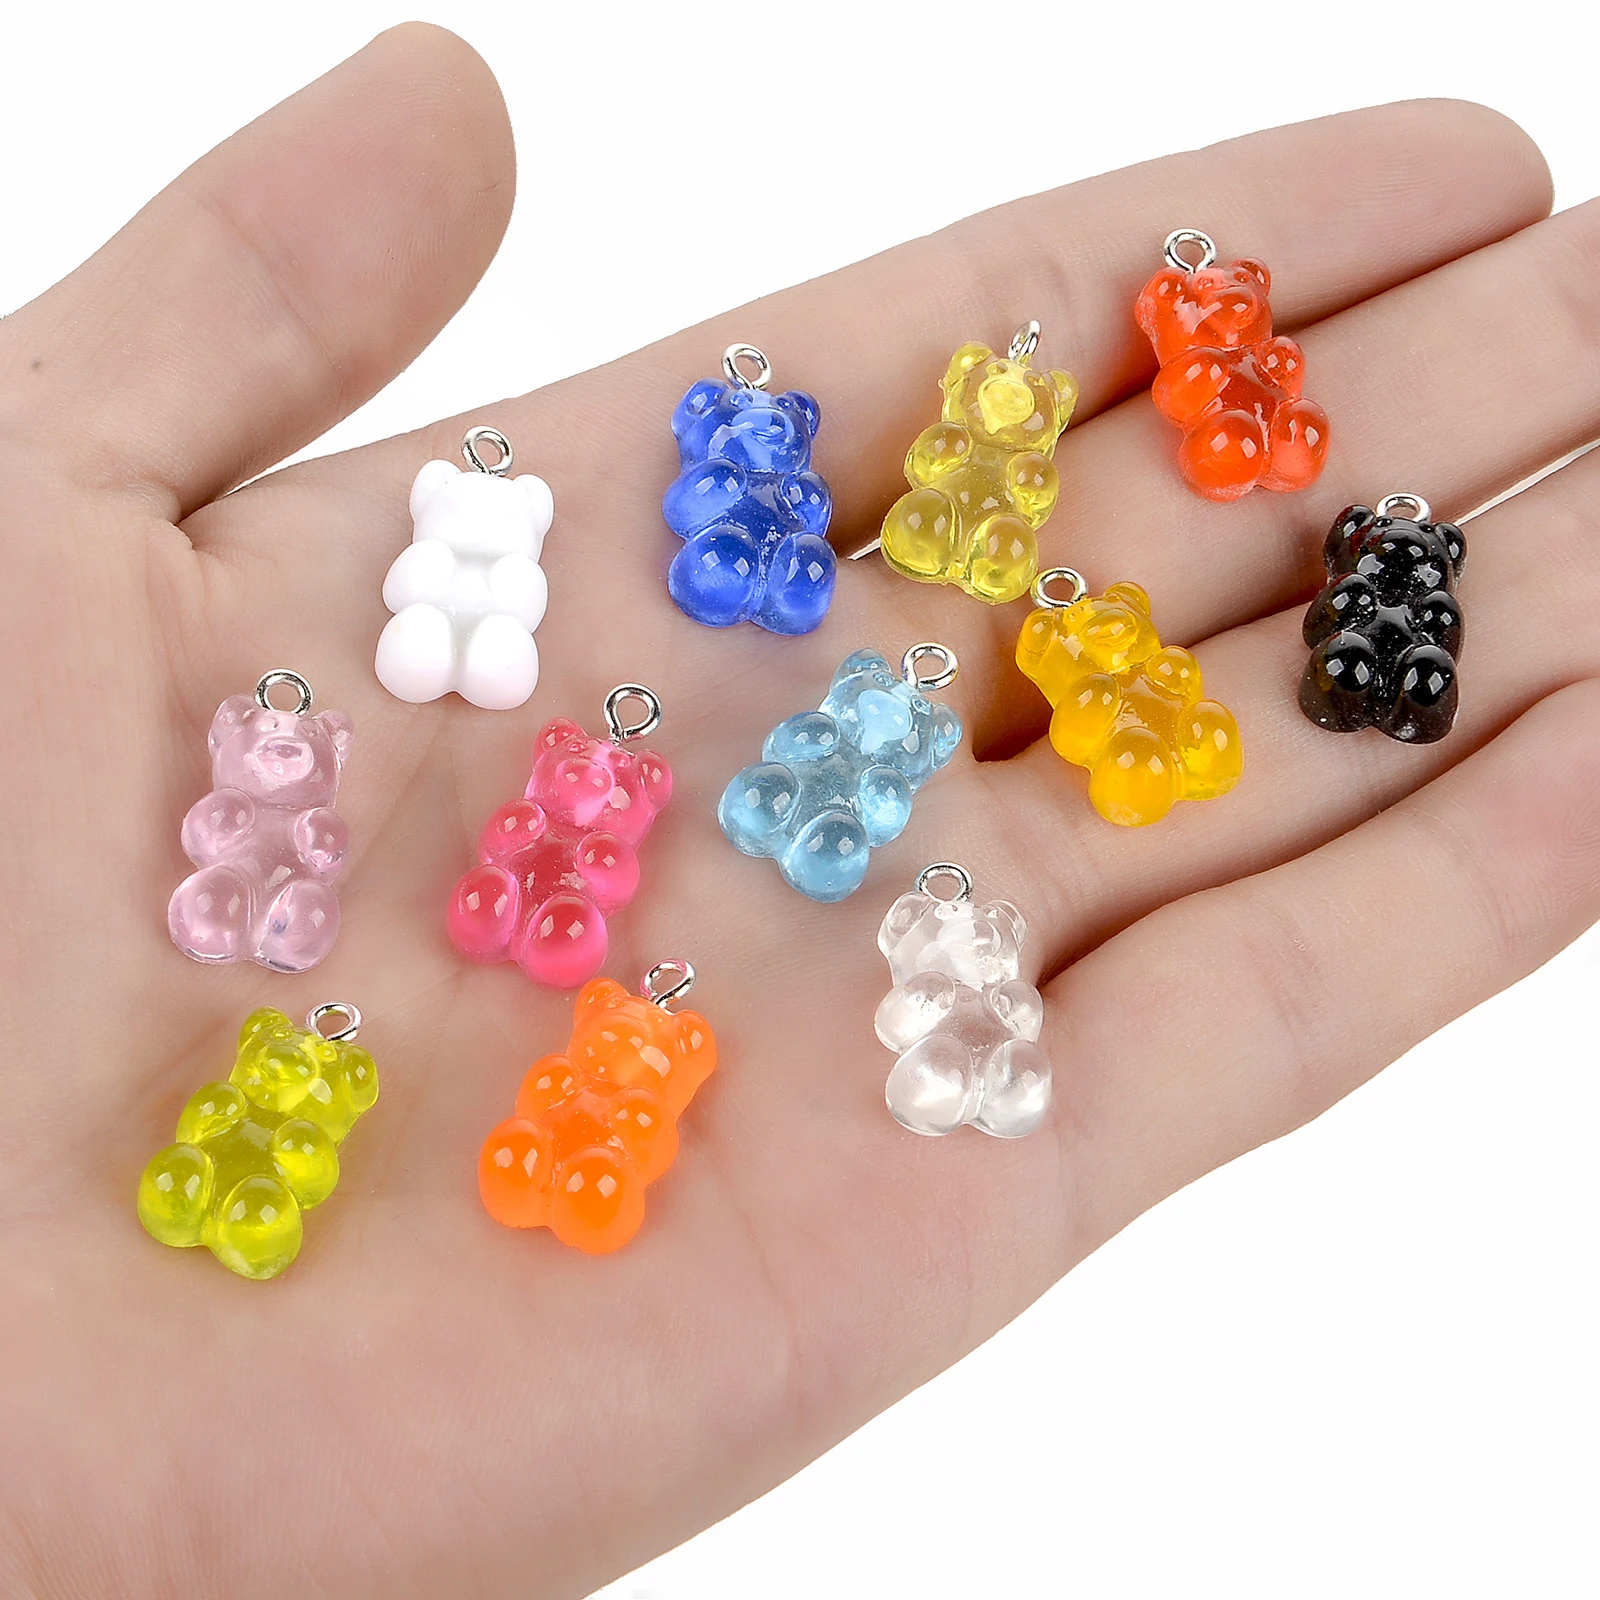 10Pcs Colorful Gummy Bear Pendant Charms for Necklace Bracelet Diy